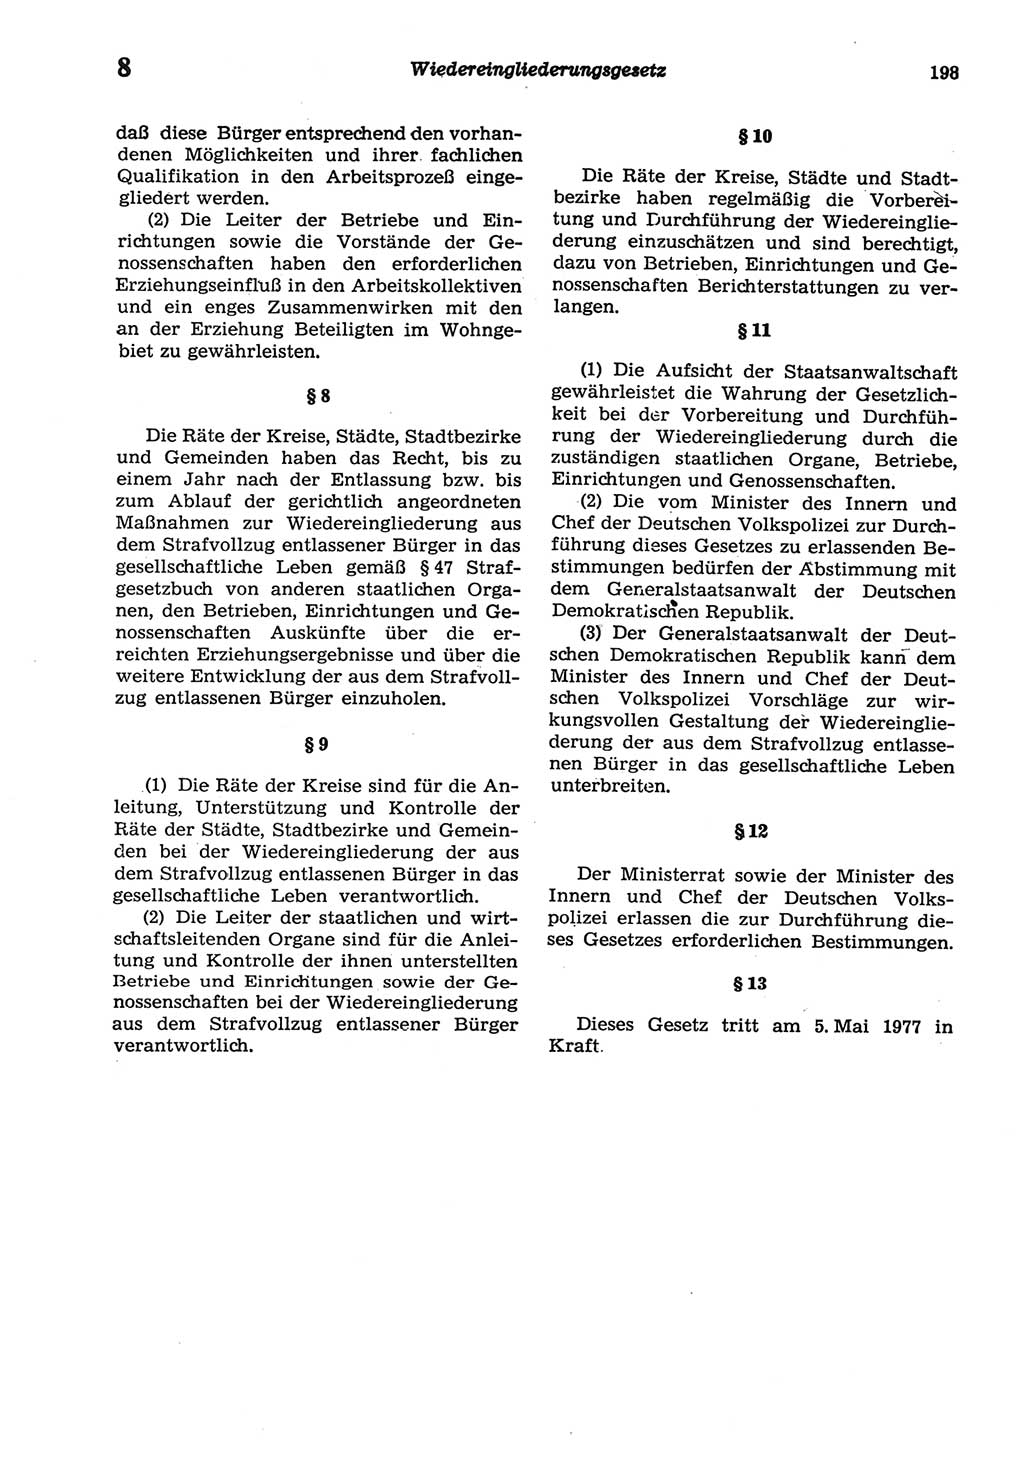 Strafprozeßordnung (StPO) der Deutschen Demokratischen Republik (DDR) sowie angrenzende Gesetze und Bestimmungen 1977, Seite 198 (StPO DDR Ges. Best. 1977, S. 198)